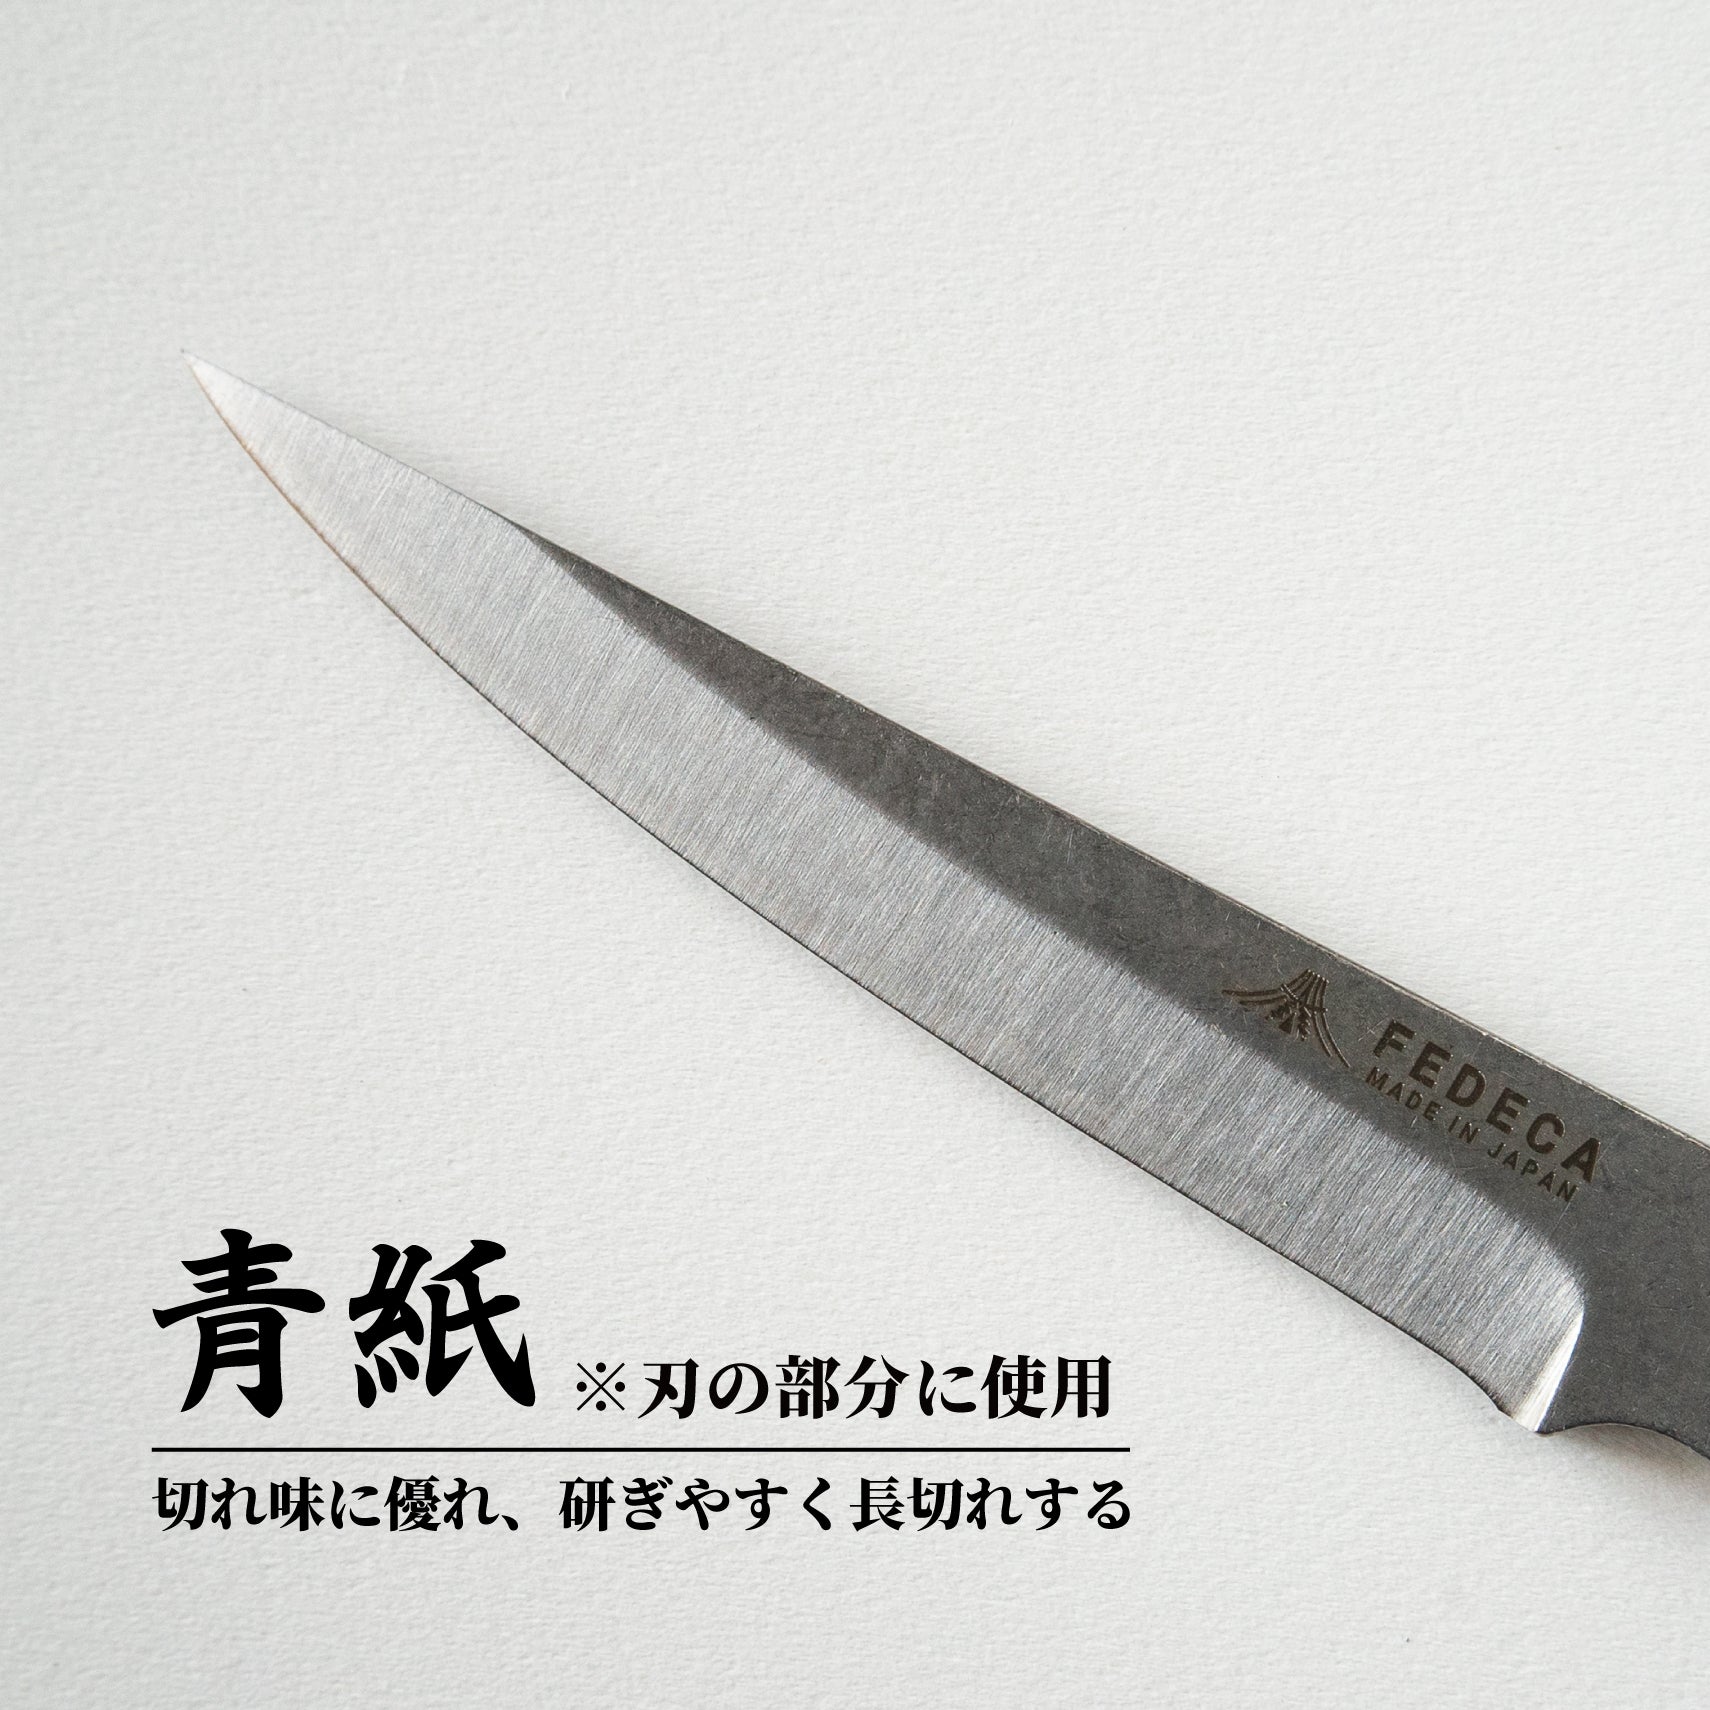 【難易度★★★】It's my knife KIBORI Advanced 5,720円